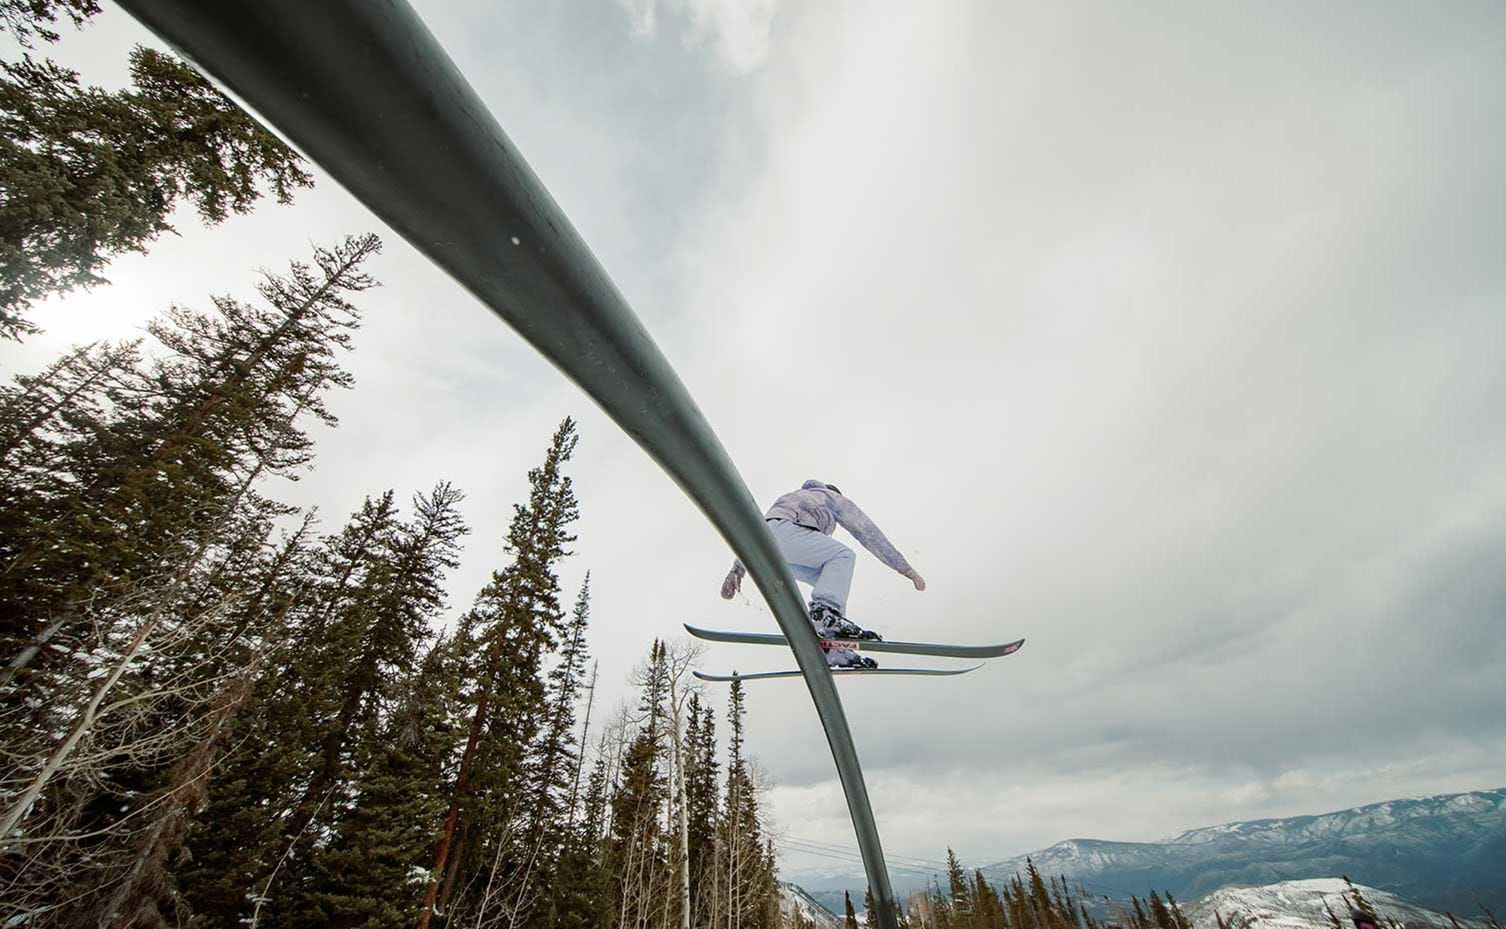 A skier rides a rail at Snowmass' terrain park